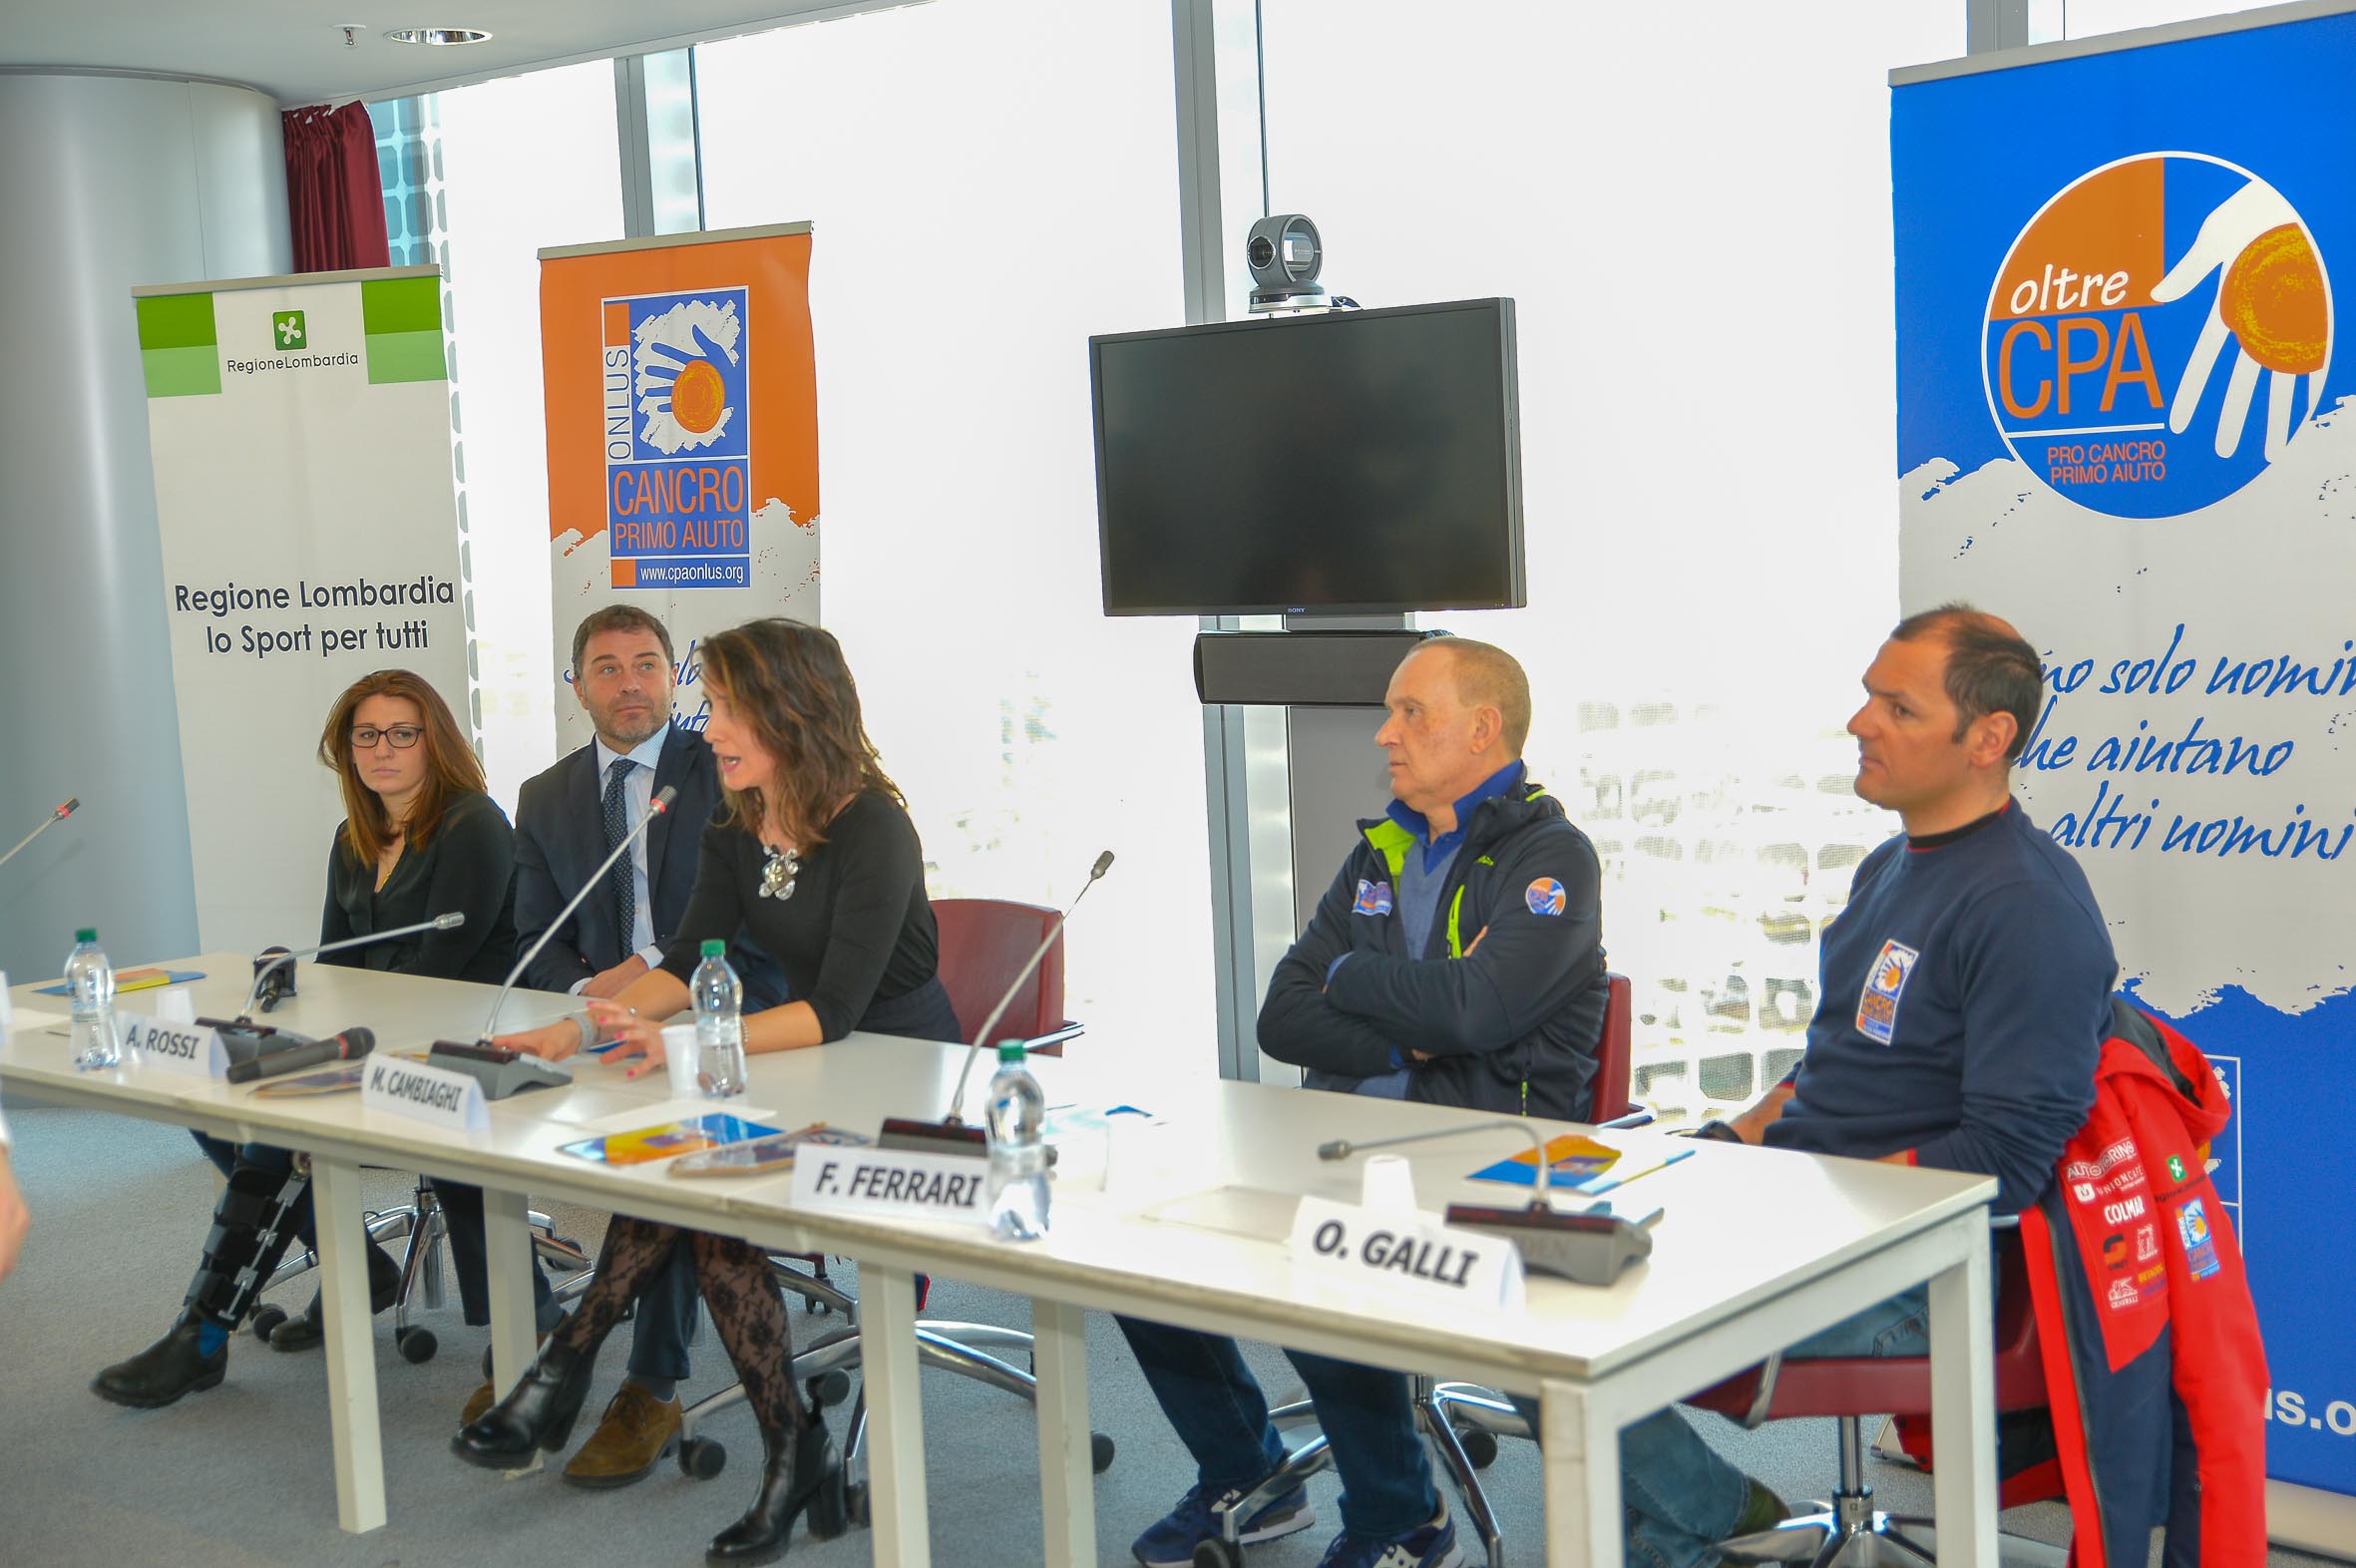 Cancro Primo Aiuto Onlus - Elena Fanchini alla presentazione dei Campionati Regionali di Sci Alpino per i più giovani nel nome di Cancro Primo Aiuto